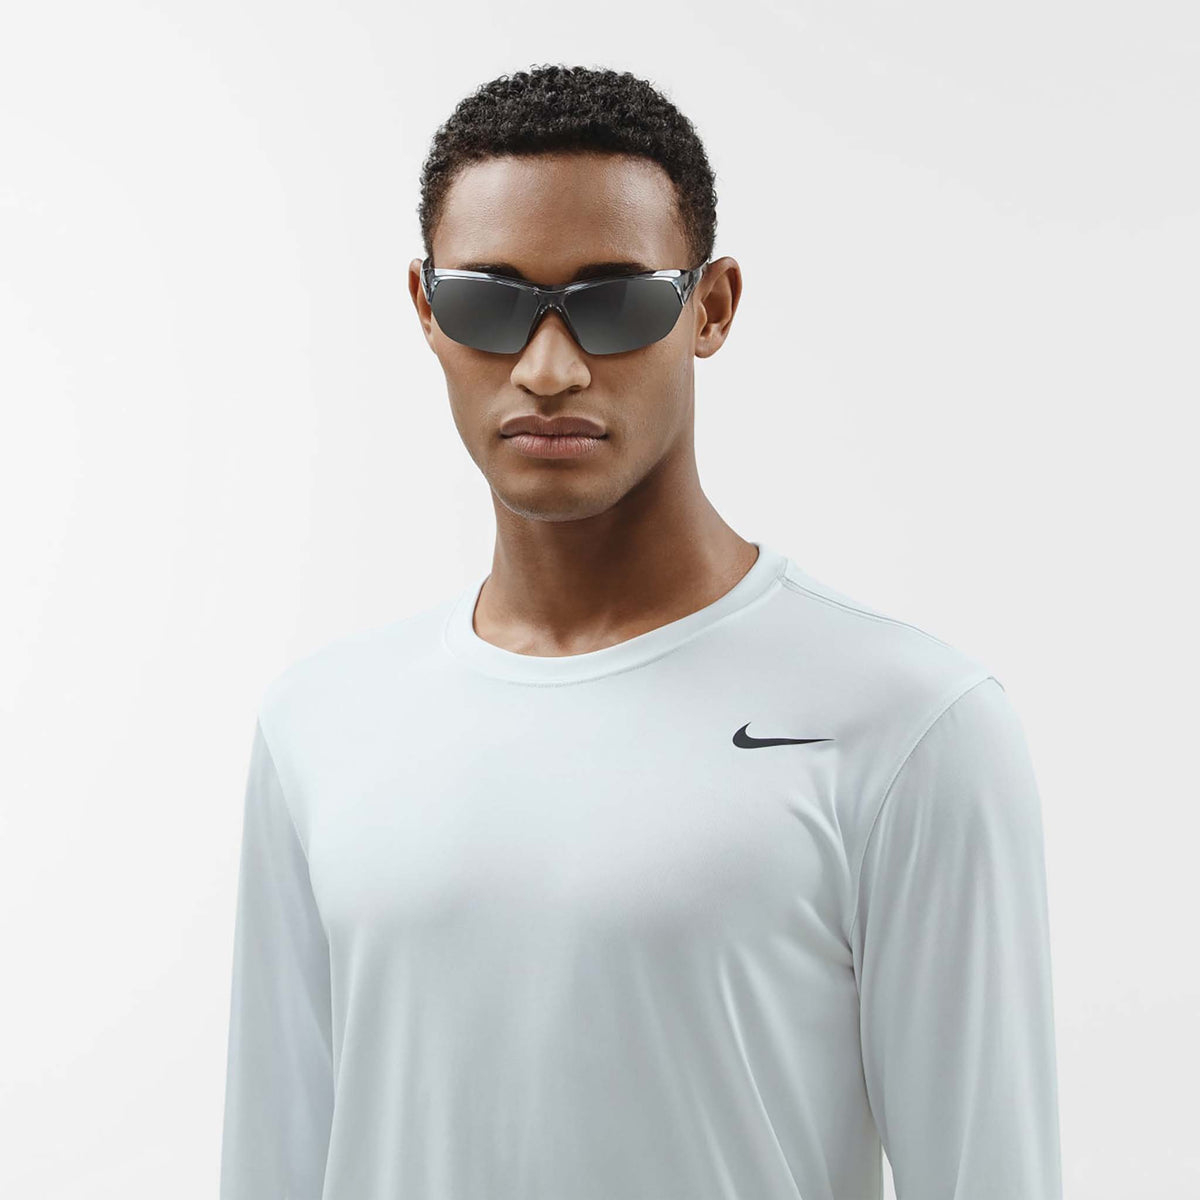 Nike Skylon Ace lunettes de soleil sport live